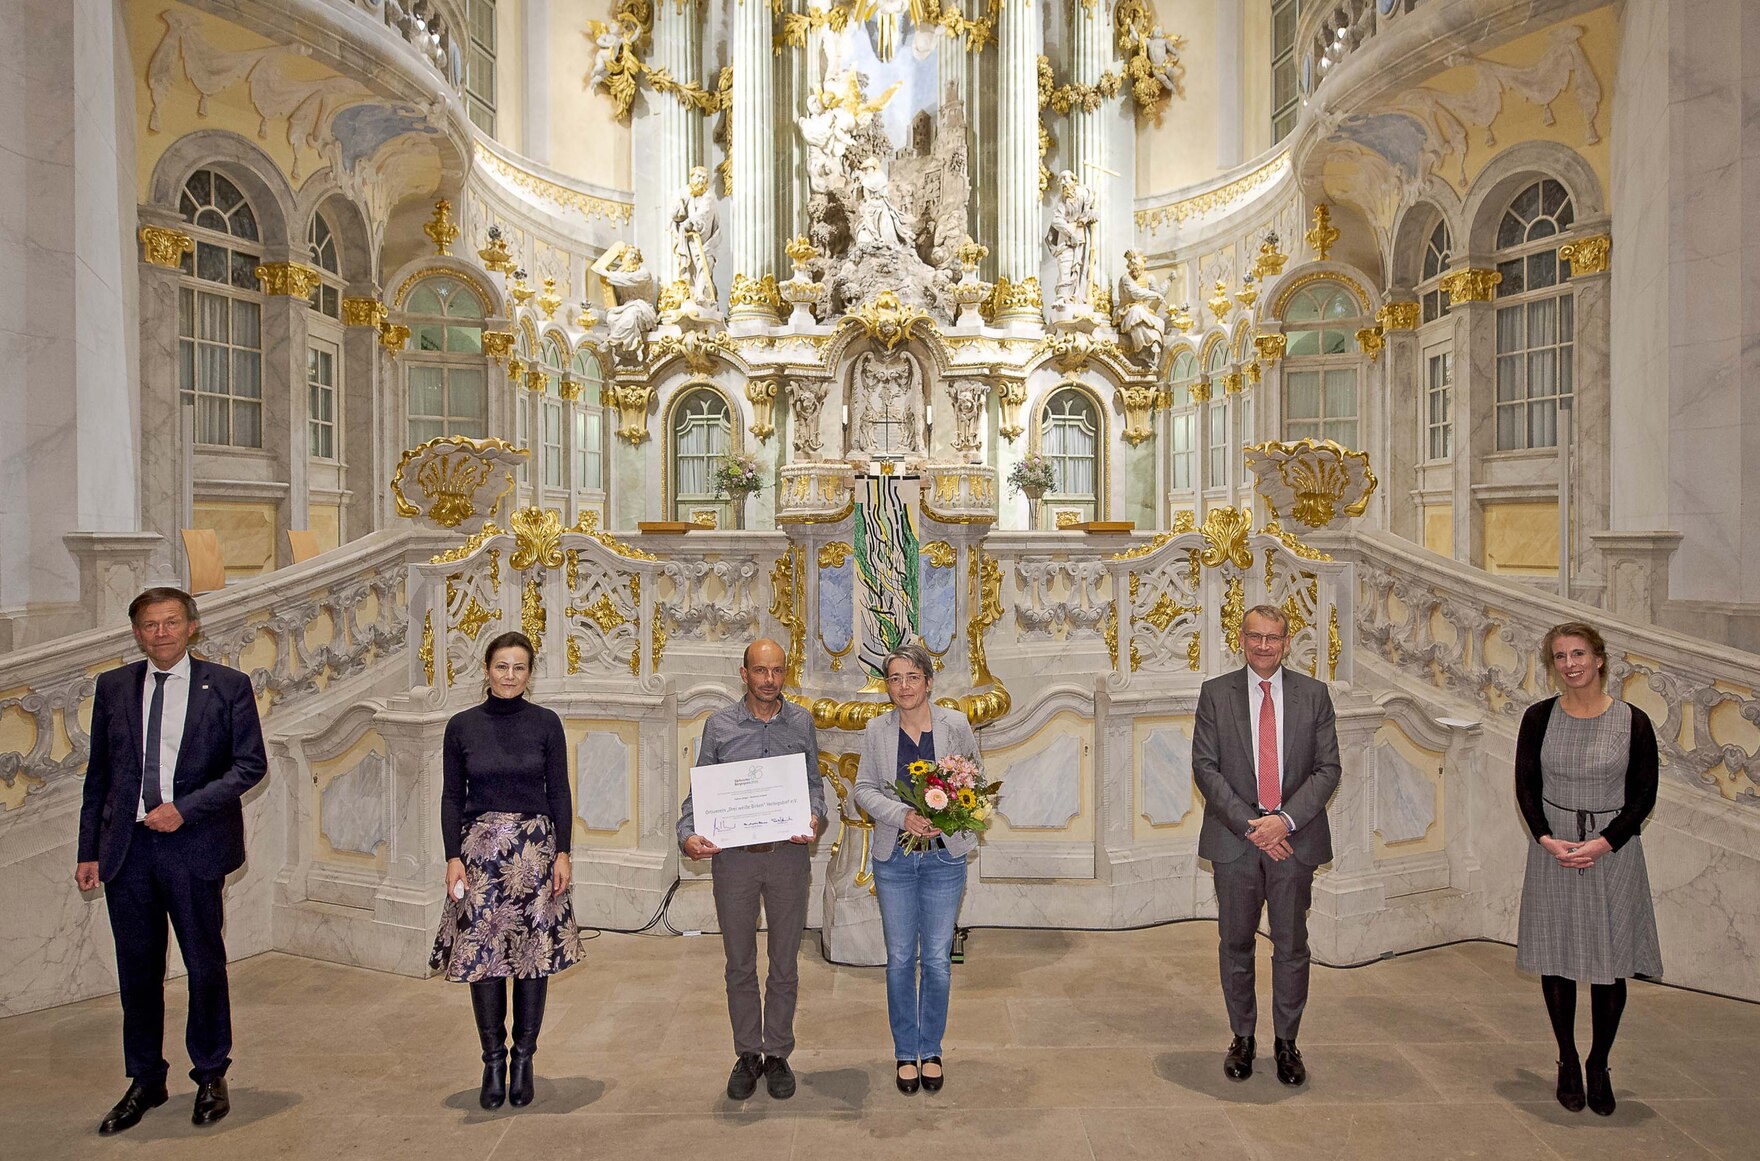 Männer und Frauen stehen vor dem Altar der Dresdner Frauenkirche.